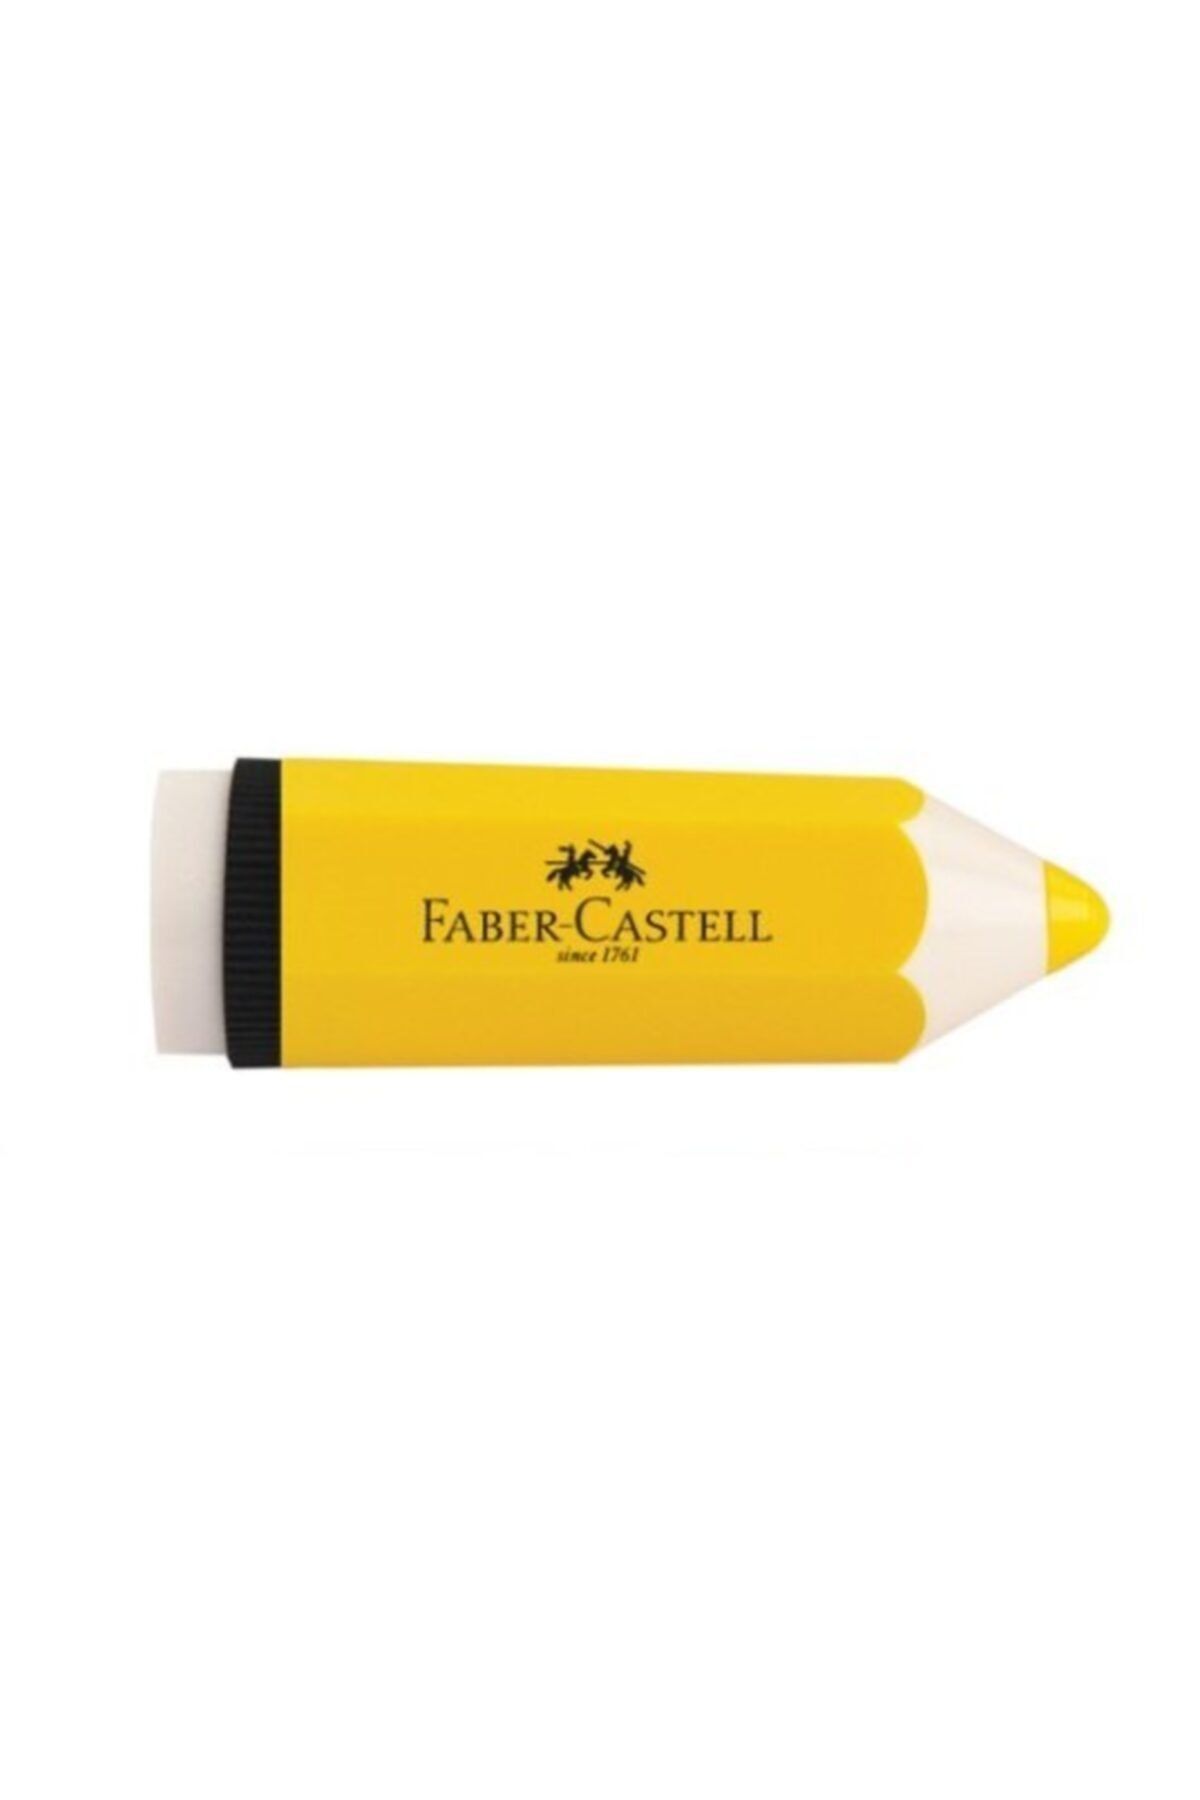 Faber Castell Kalem Şekilli Kalemtraş Sarı